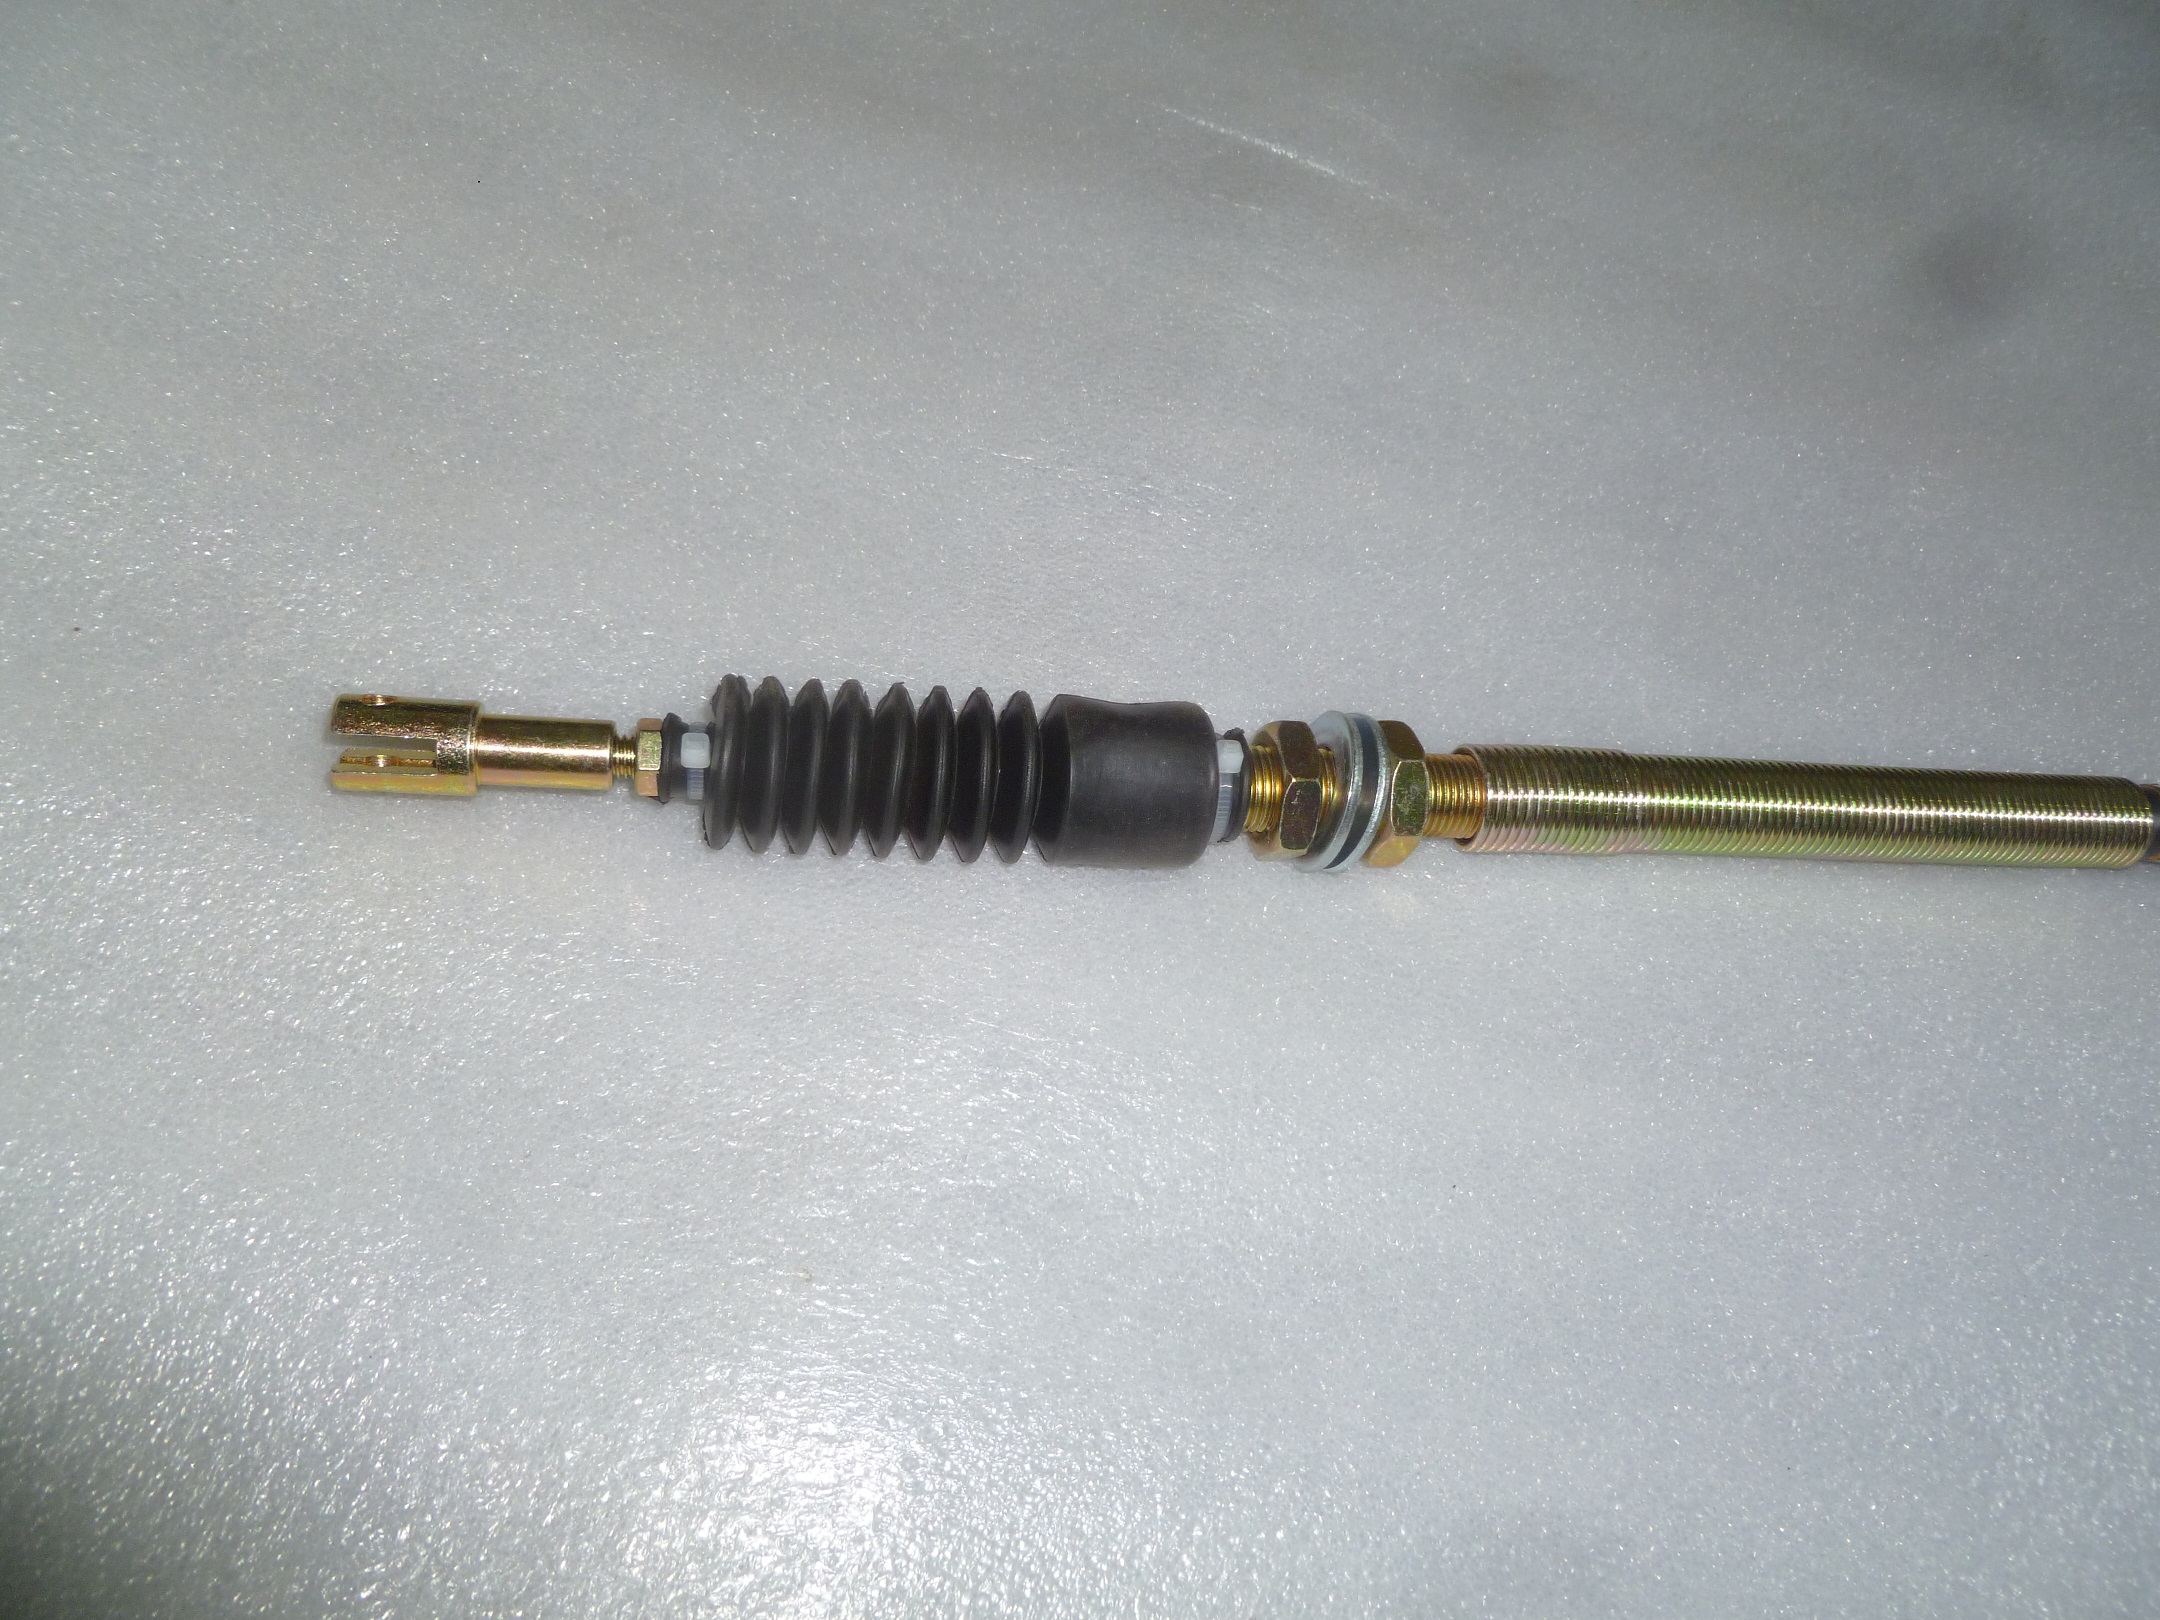 Тросик реверса (L=1030мм/Ш=М8х25мм/М6) TSS-WP160-170/Vibrator control cable, №20-2 (CNP300020-2)